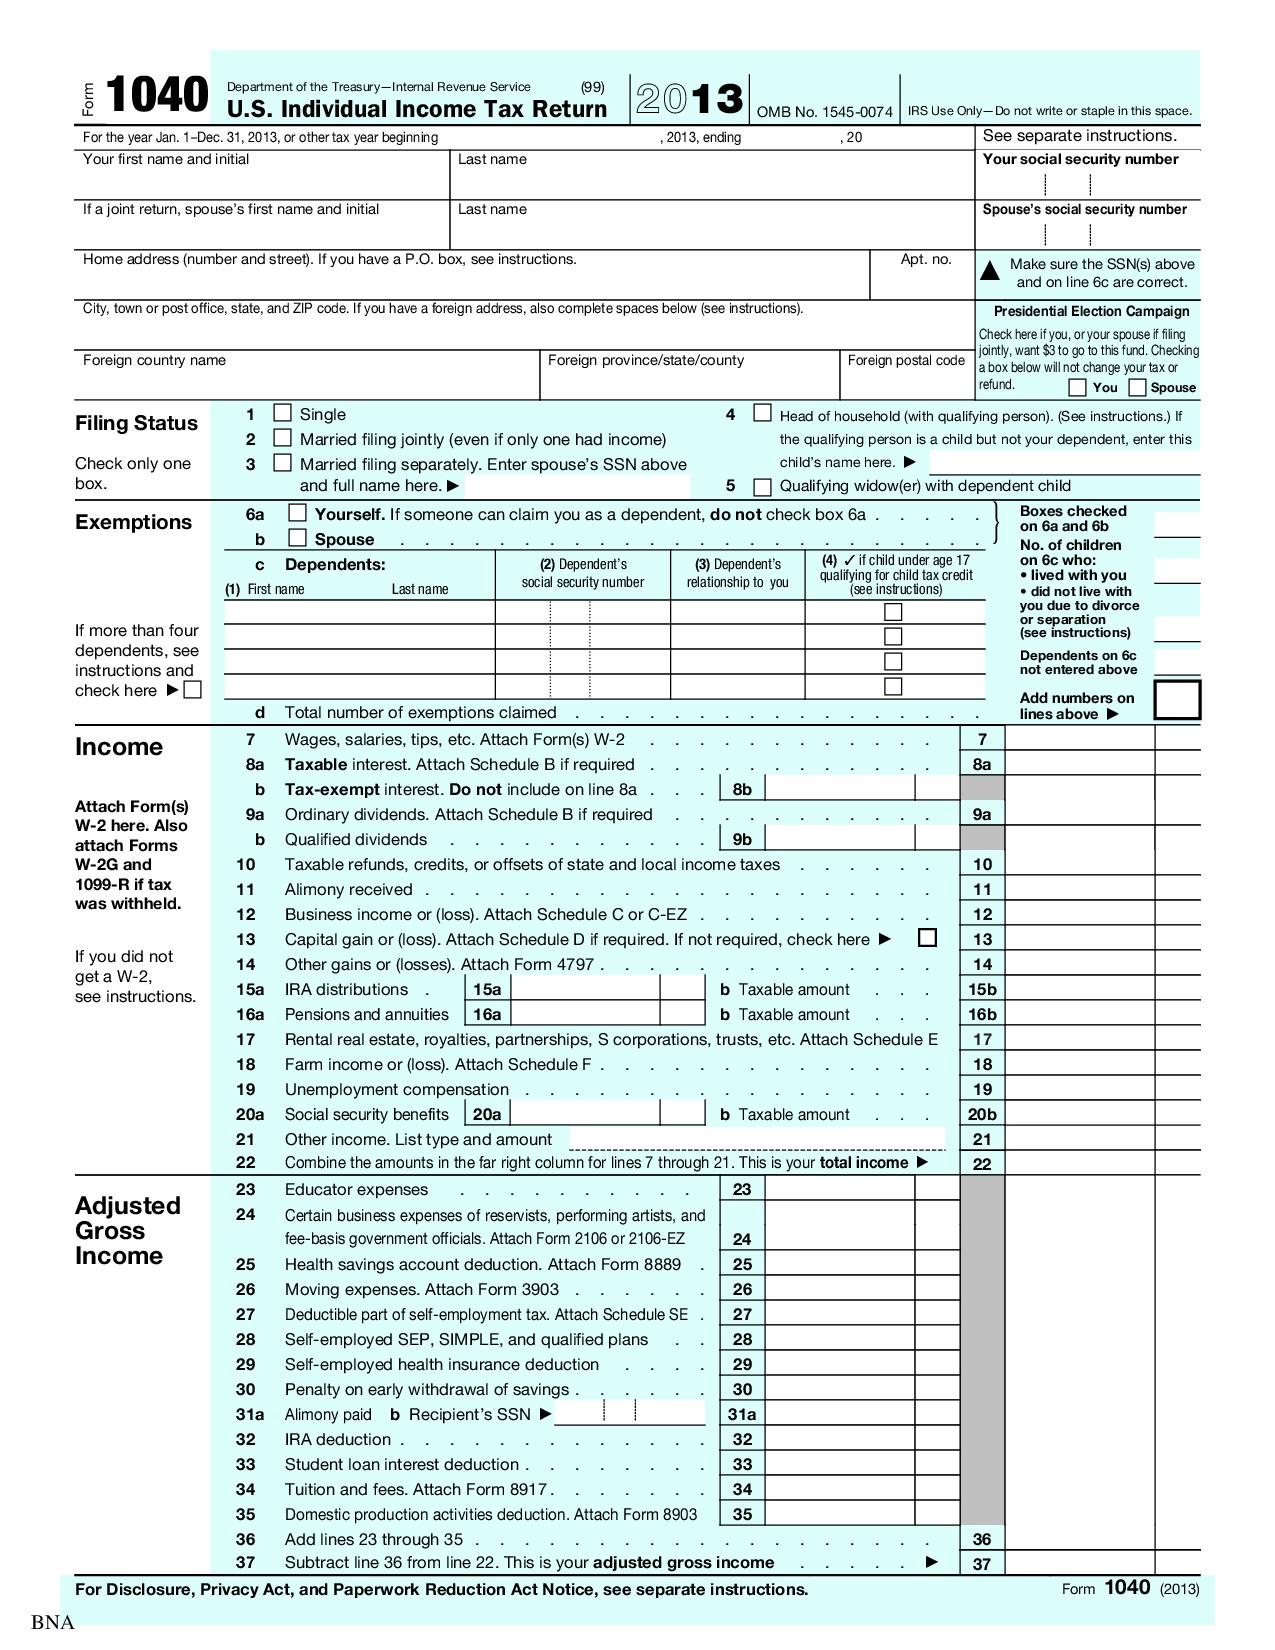 tax return schedule